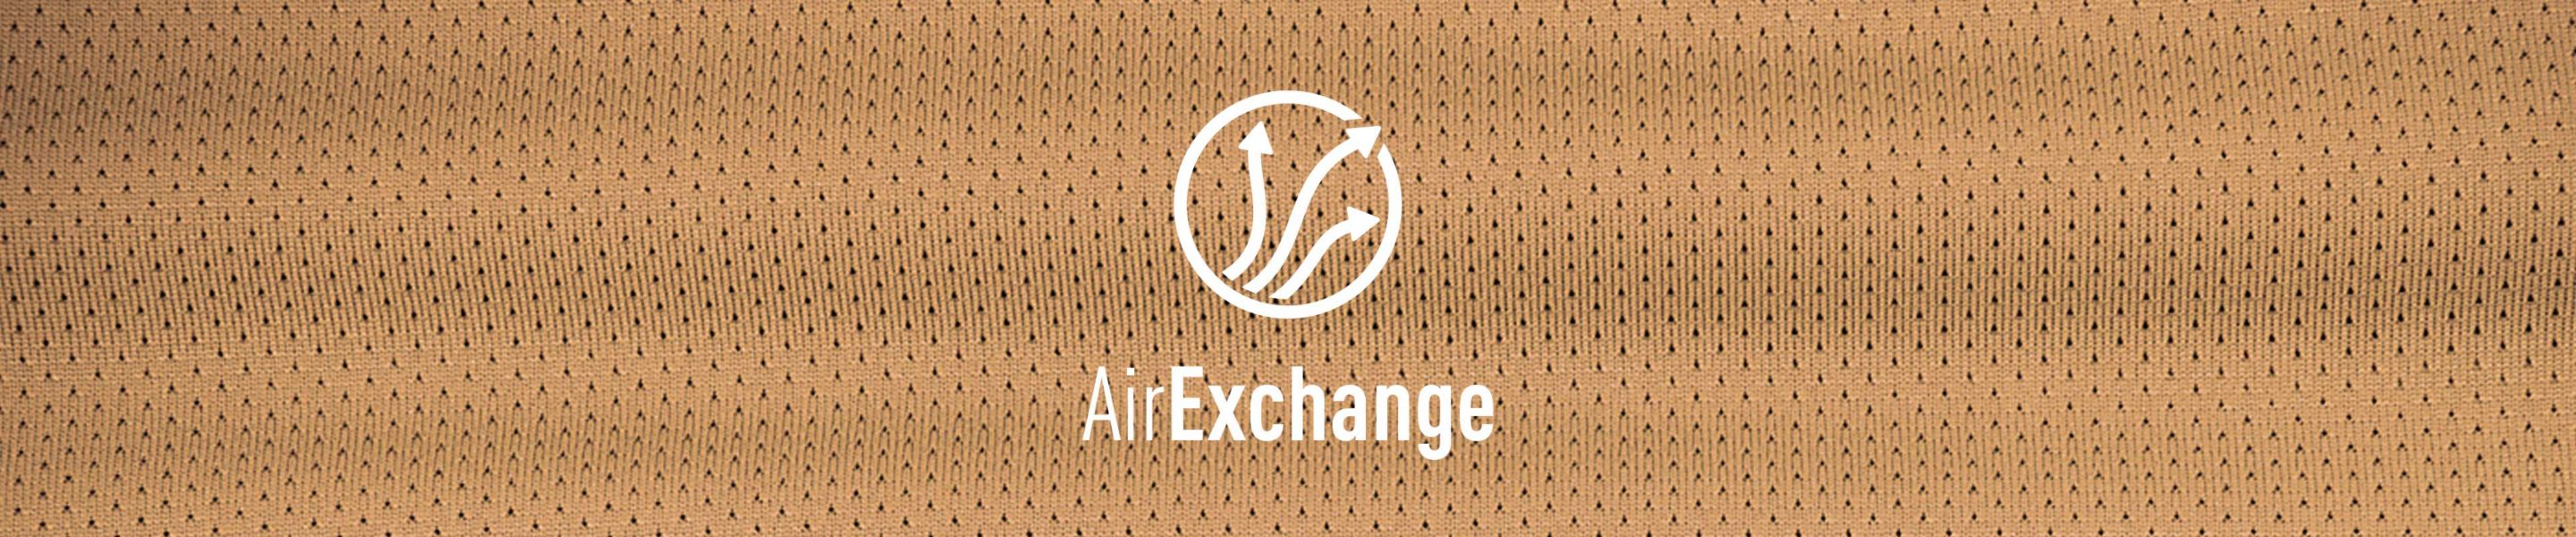 Air Exchange logo